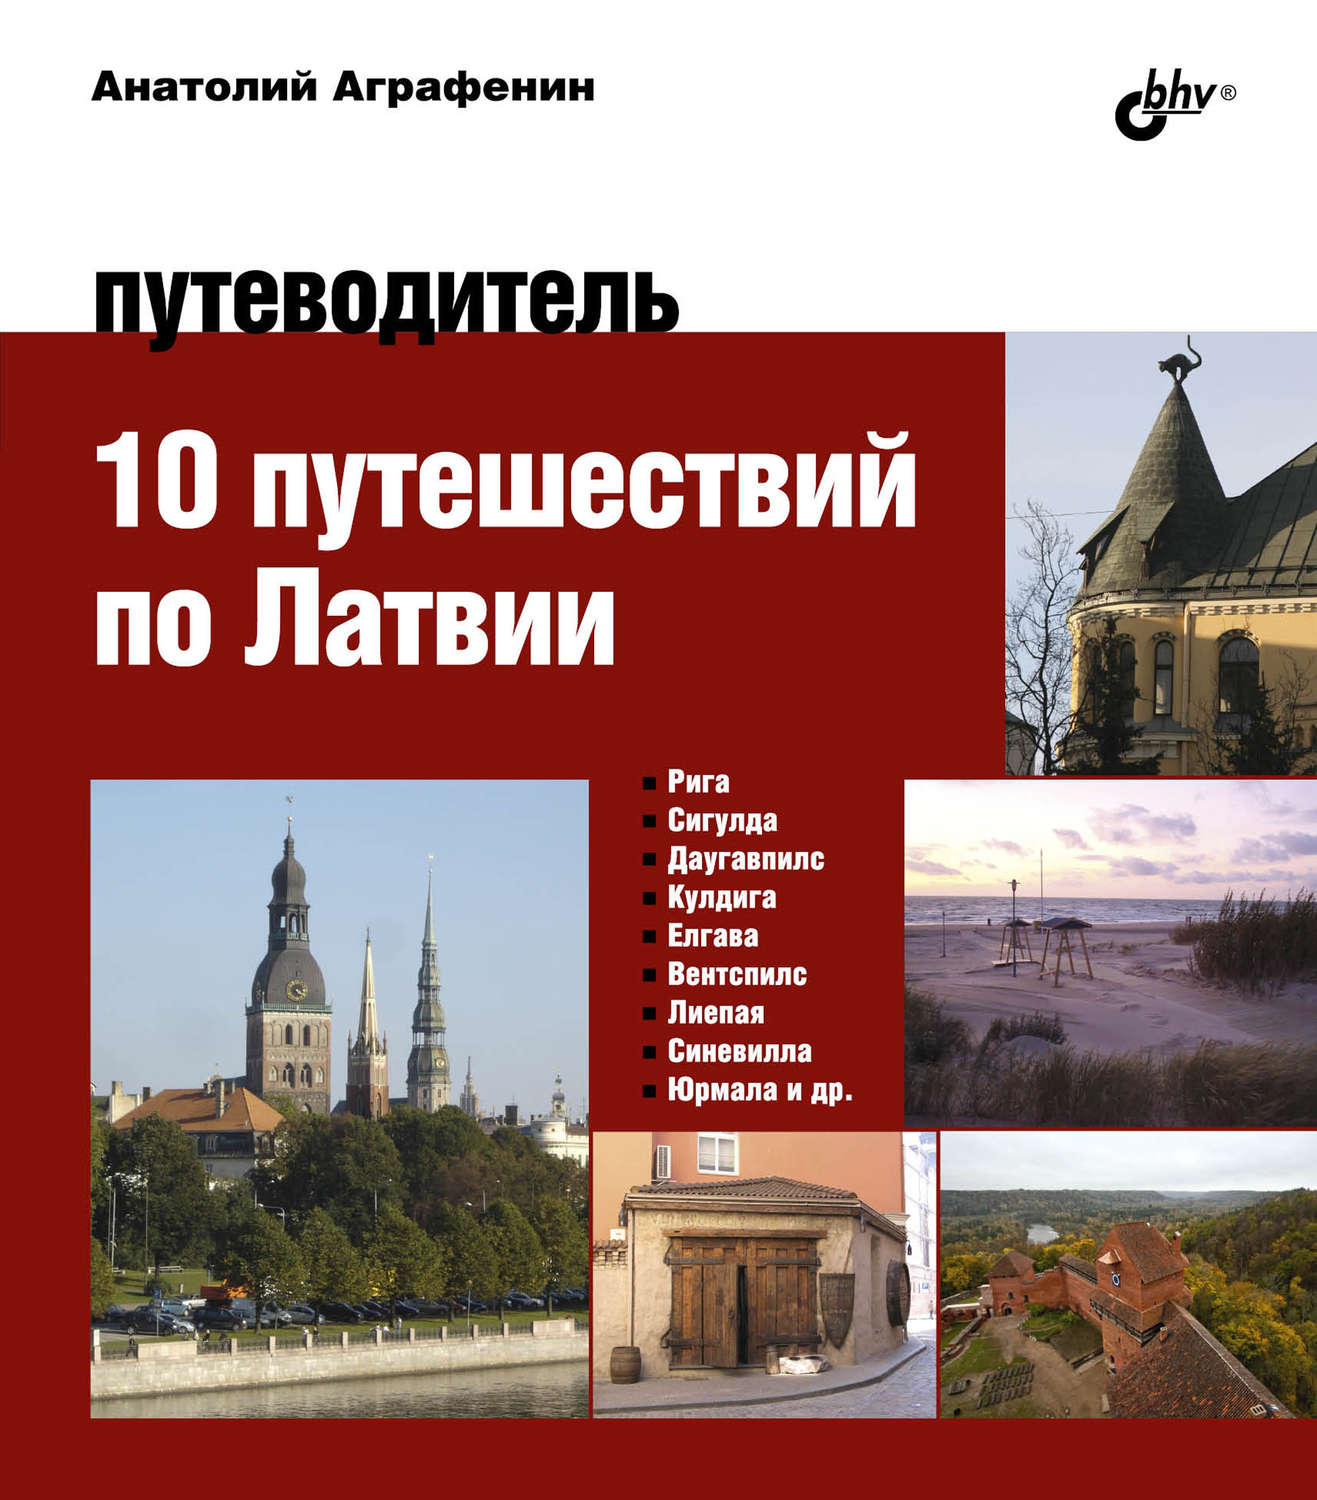 Путеводитель по латвии скачать бесплатно pdf